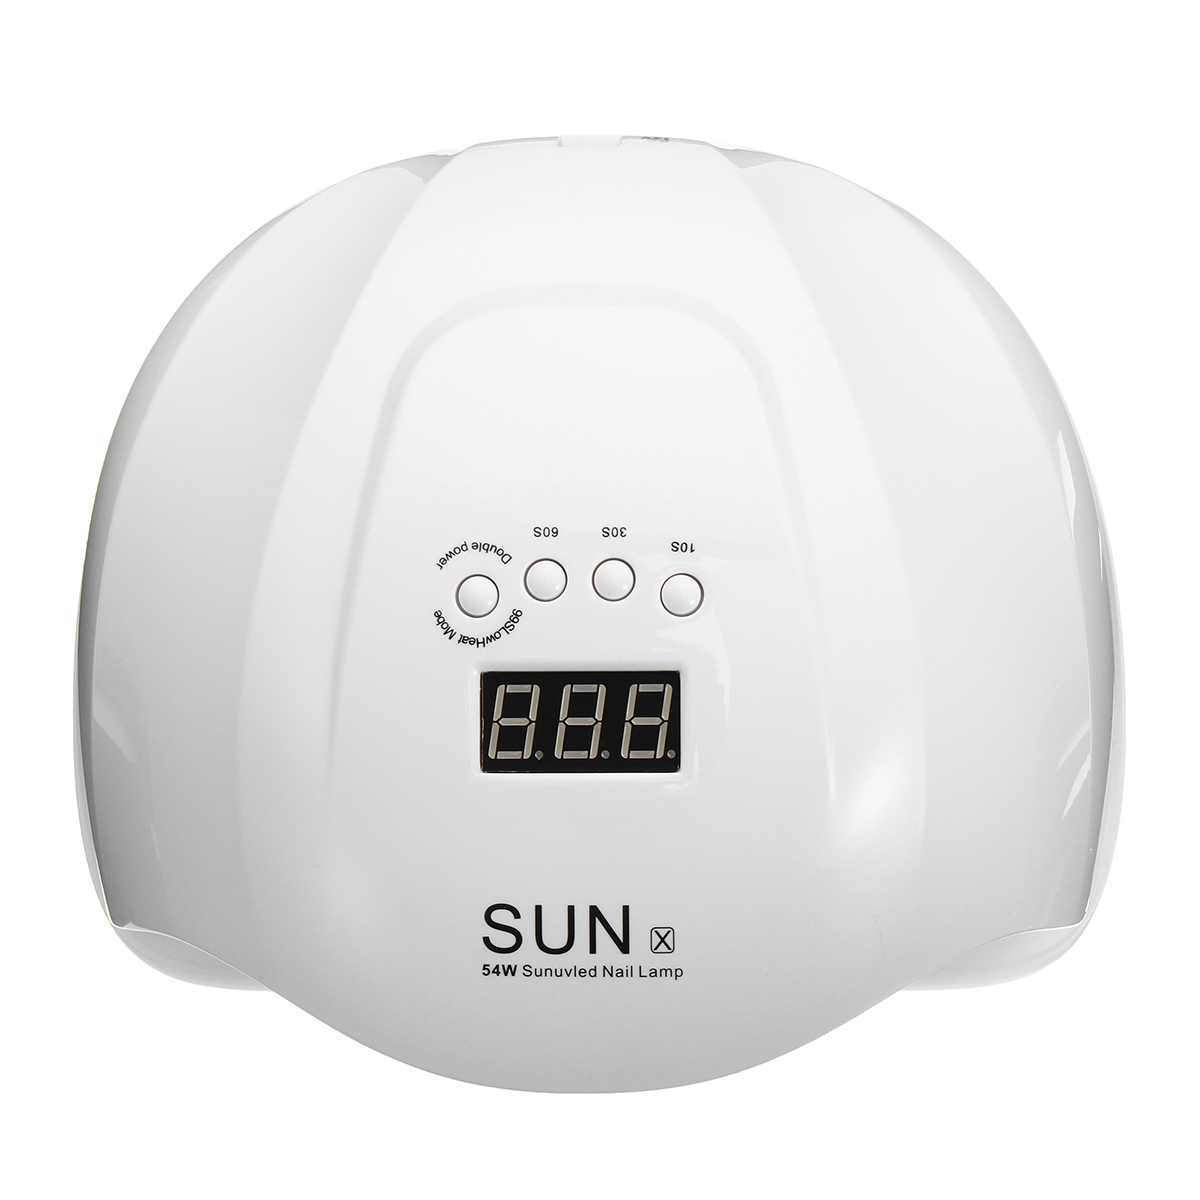 

SUNX 54W UV LED Лампа Ногти Сушка для сушки Гель Польский